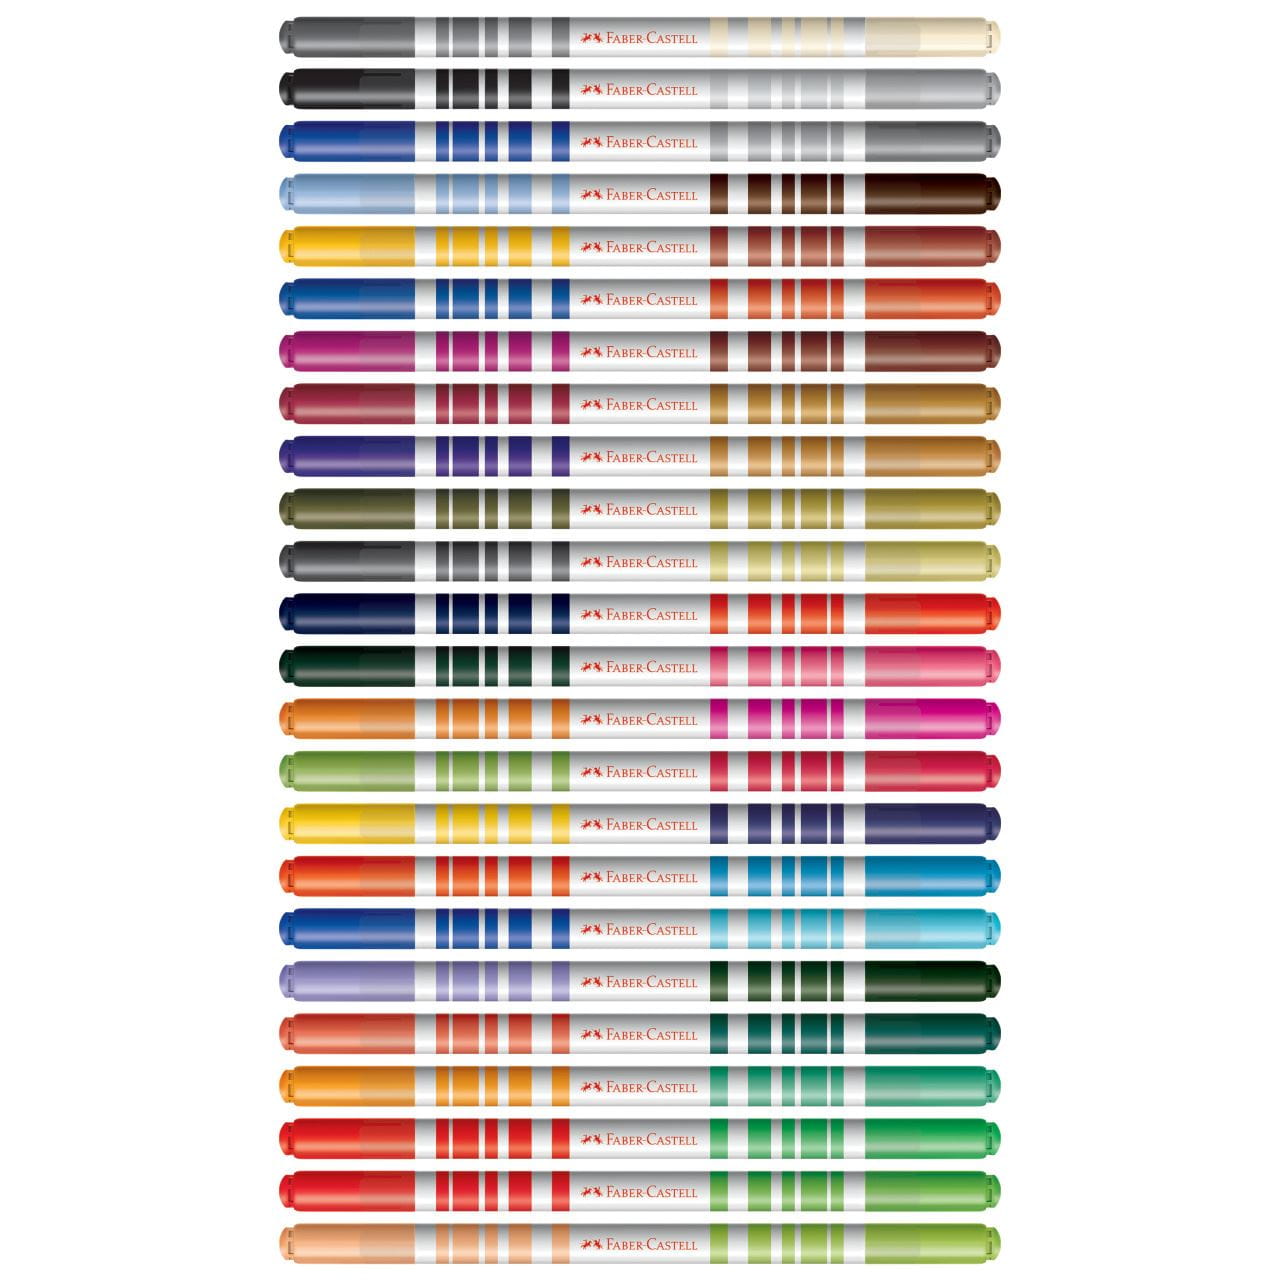 Faber-Castell - Canetinha Hidrografica Bicolor 12 Cores 24 Canetas = 48 Cores